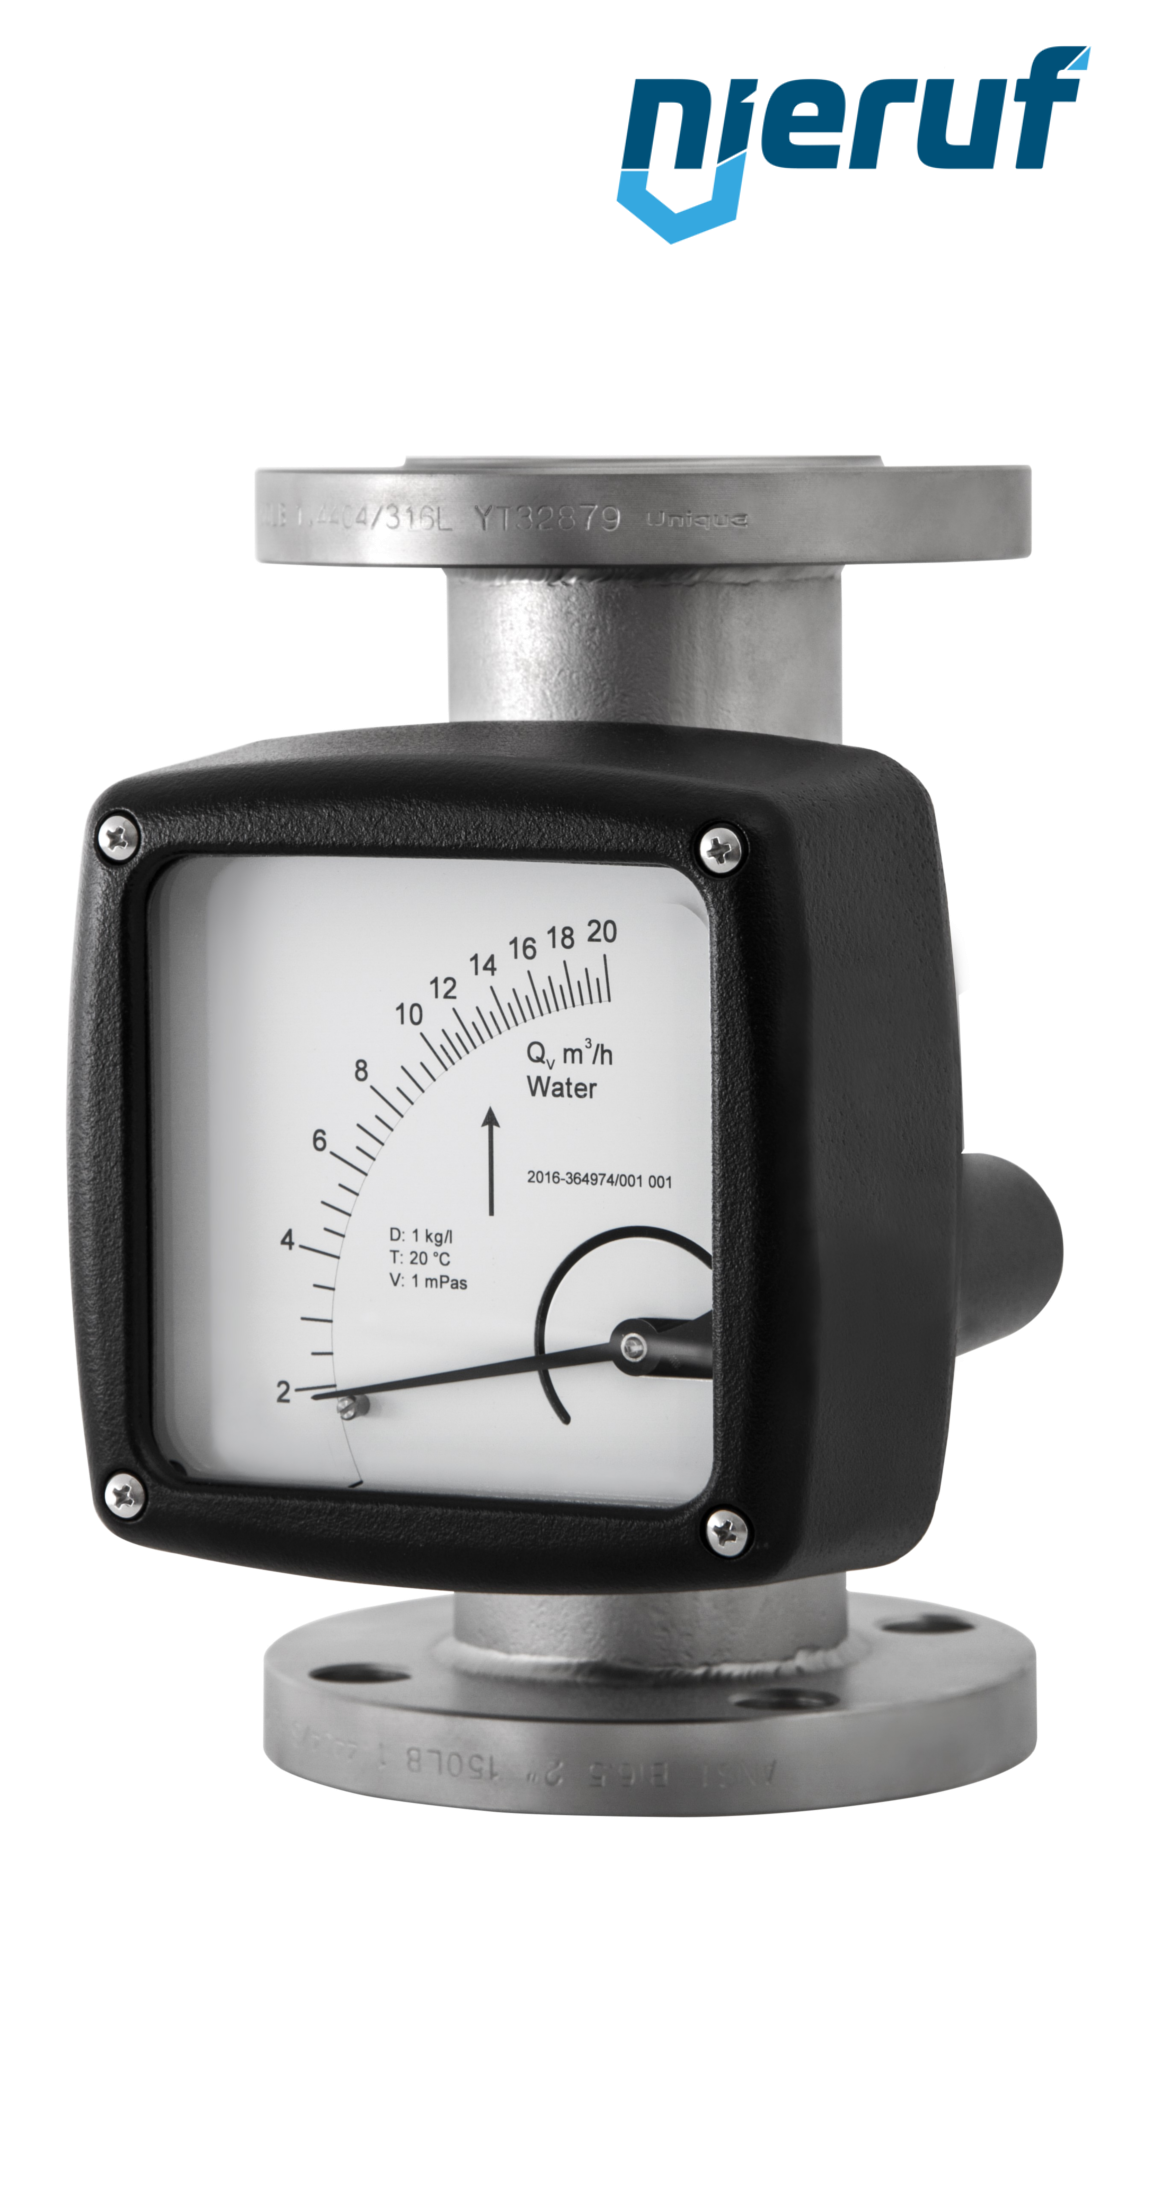 misuratore di portata / flussometro flangiato DN25-attacco 0,03 - 0,30 m3/h tubo DN15 aria